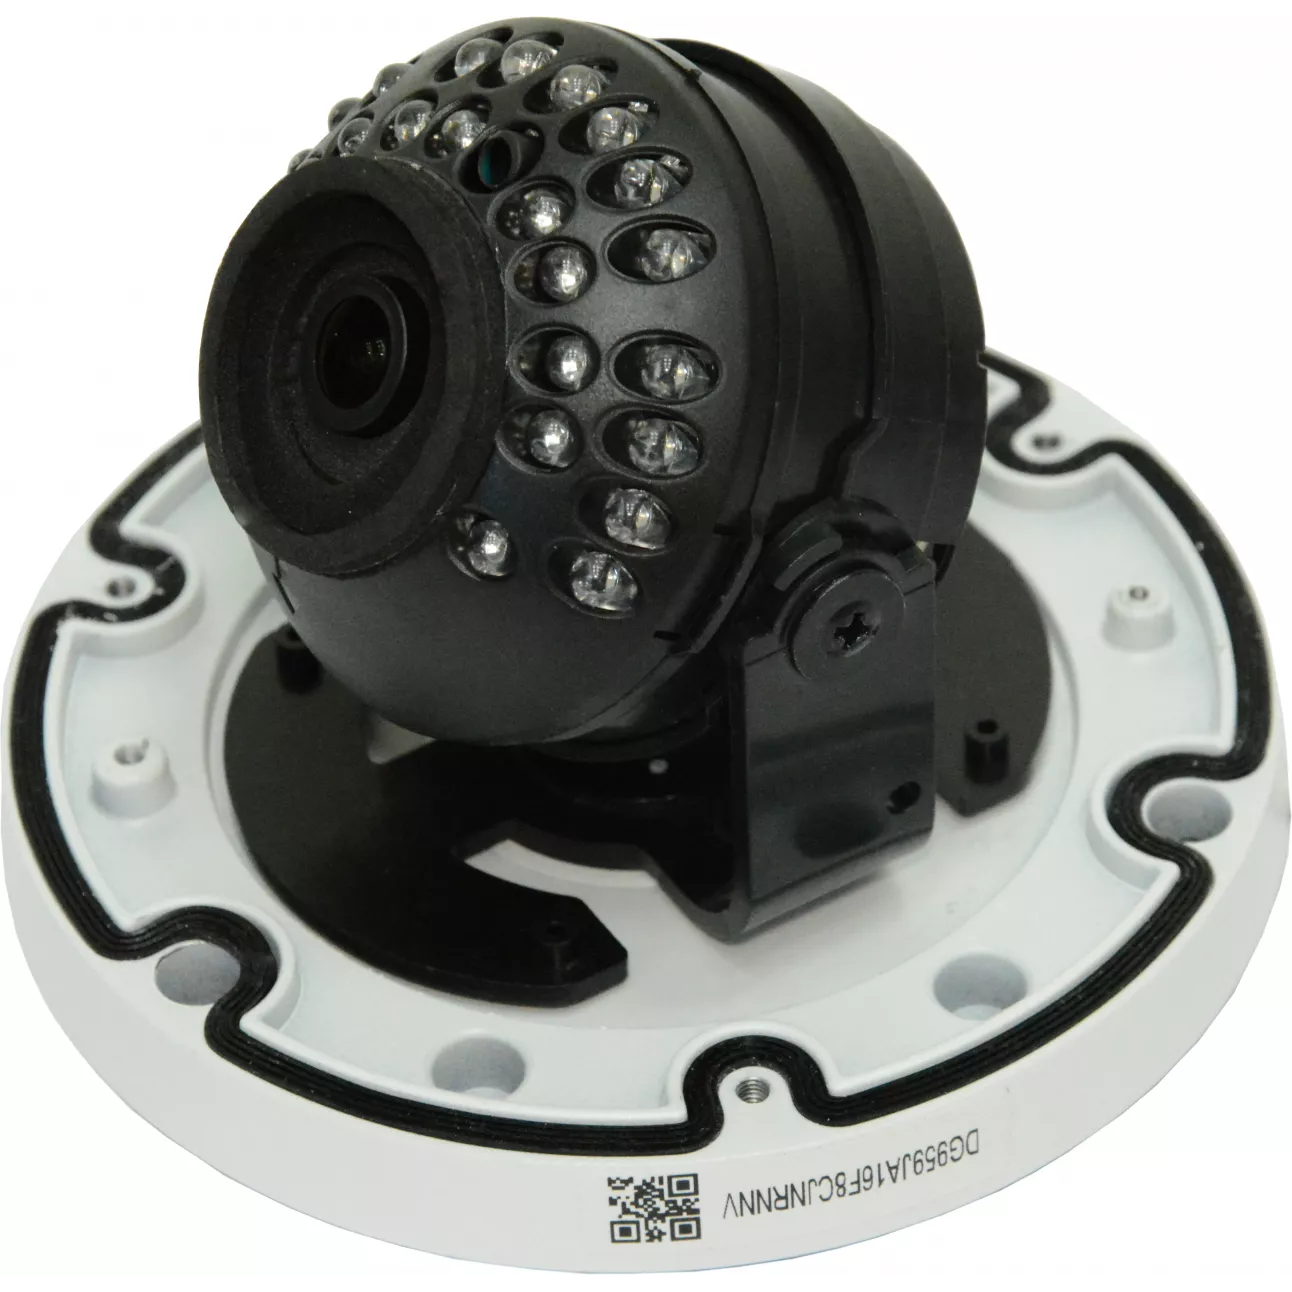 IP камера OMNY 404M PRO антивандальная купольная мини 1080p, c ИК подсветкой, 6мм, 12В/PoE, EasyMic